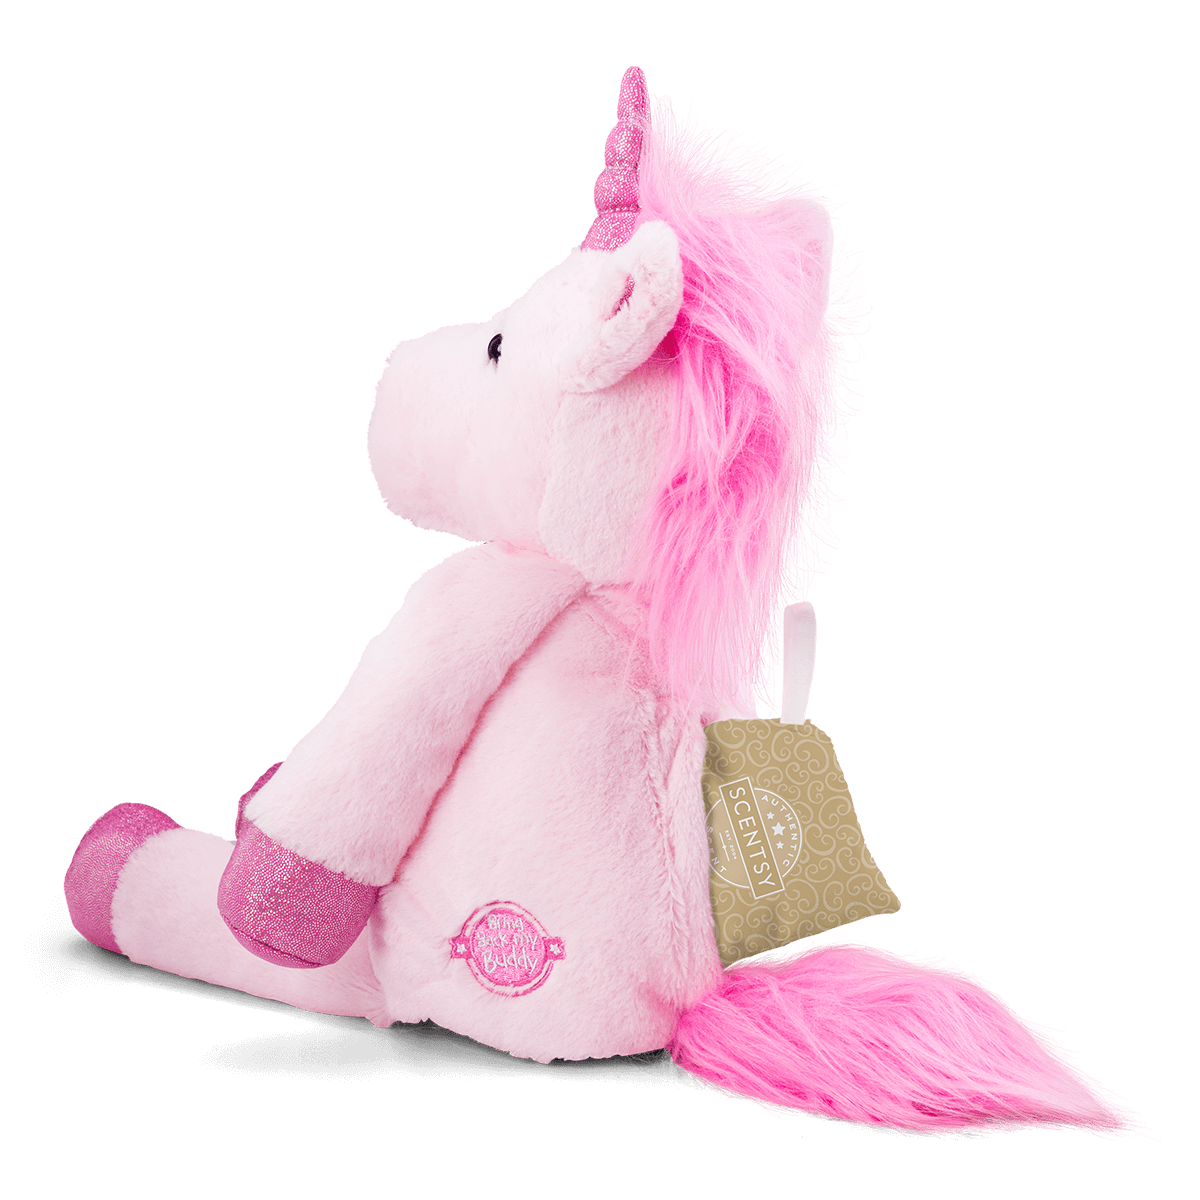 Scentsy Buddy ~  Calypso the Unicorn (Pink Rhubarb Sugar)